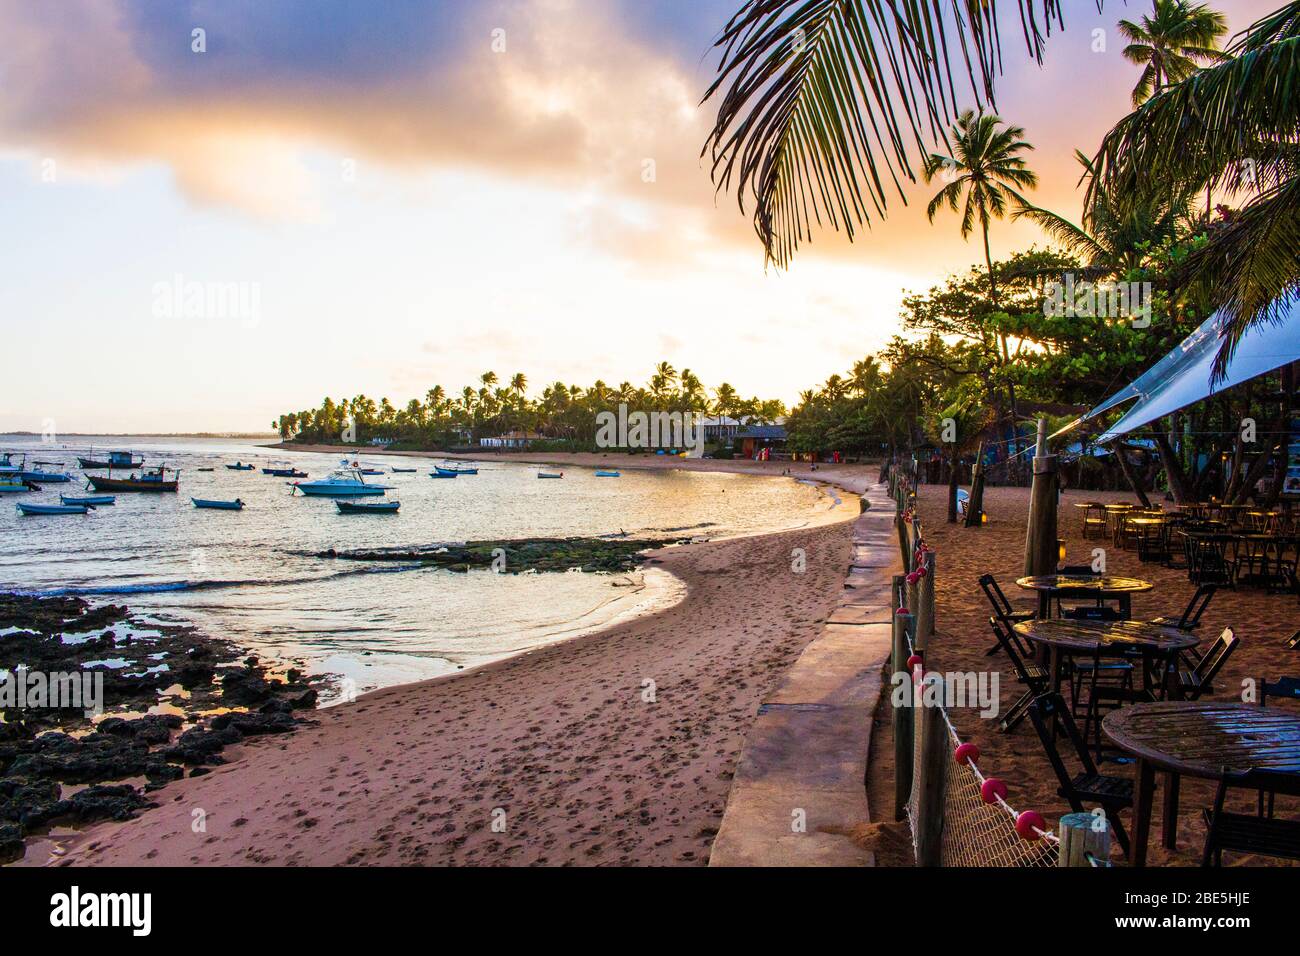 Prise 2018 à Praia do forte, Bahia, Brésil. Plage et sable fin au coucher du soleil. Palmiers verts. Banque D'Images